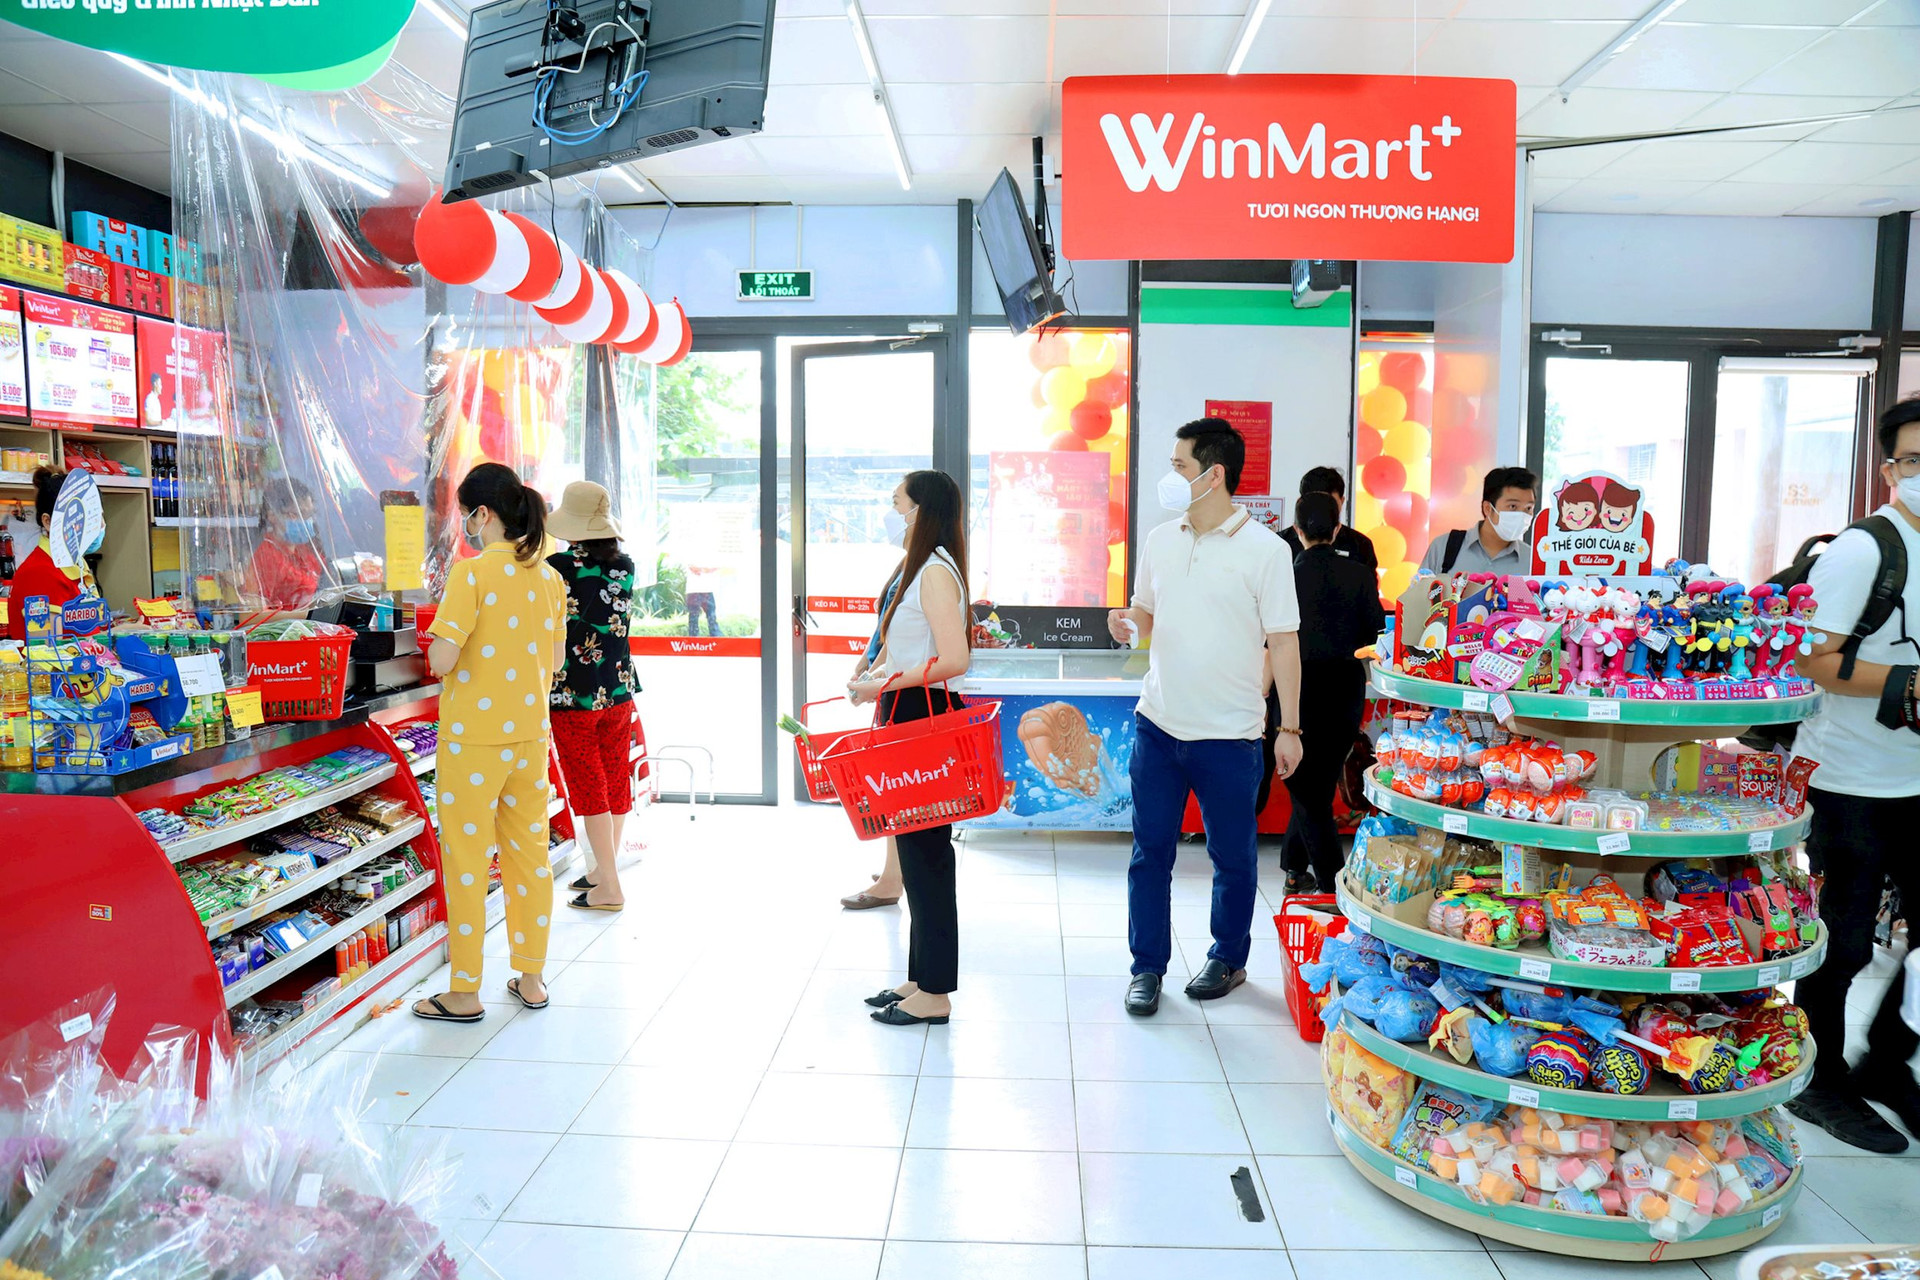 Chủ chuỗi siêu thị Winmart, Winmart+ lỗ hơn 380 tỷ đồng trong 6 tháng đầu năm 2023 - Ảnh 1.